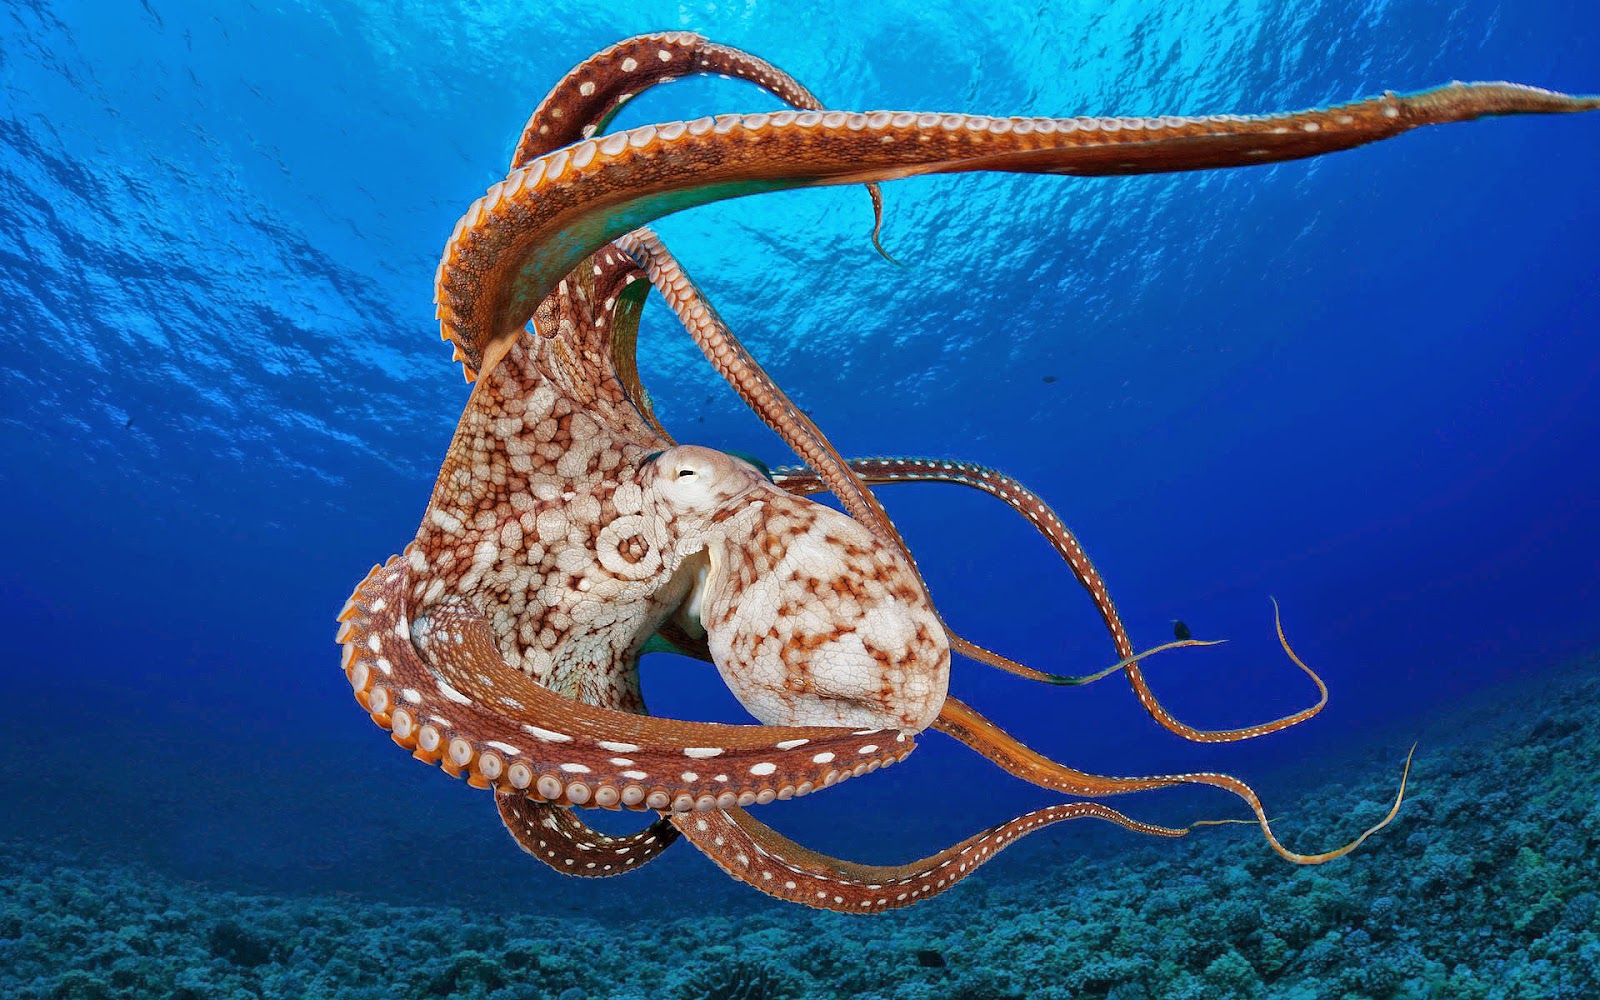 octopus wallpaper,organism,giant pacific octopus,marine invertebrates,invertebrate,octopus